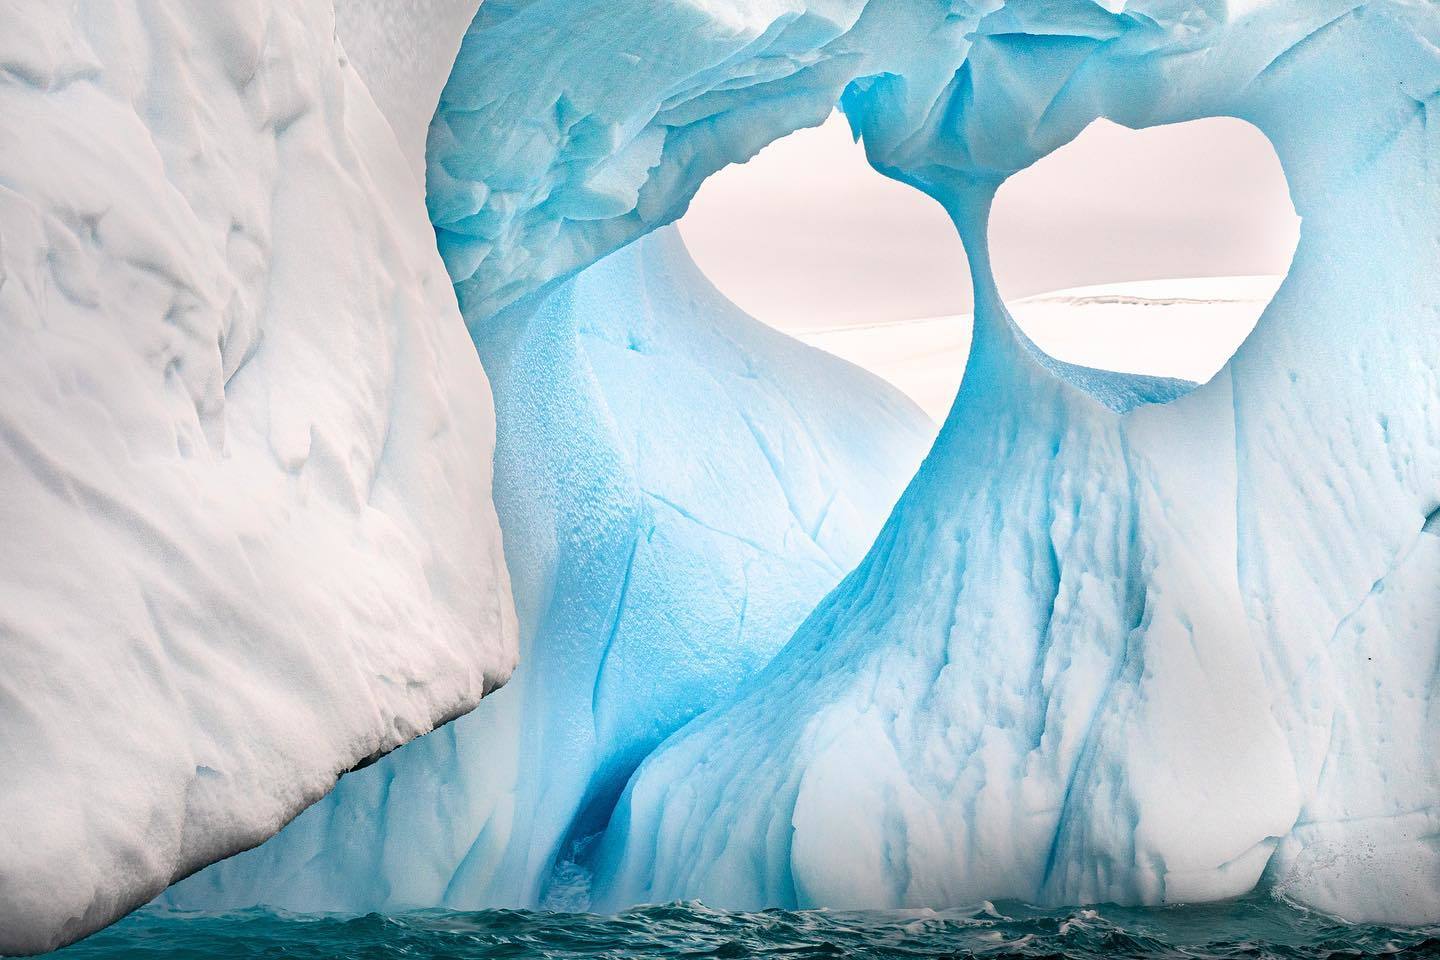  冰山，来自摄影师Jon McCormack。 